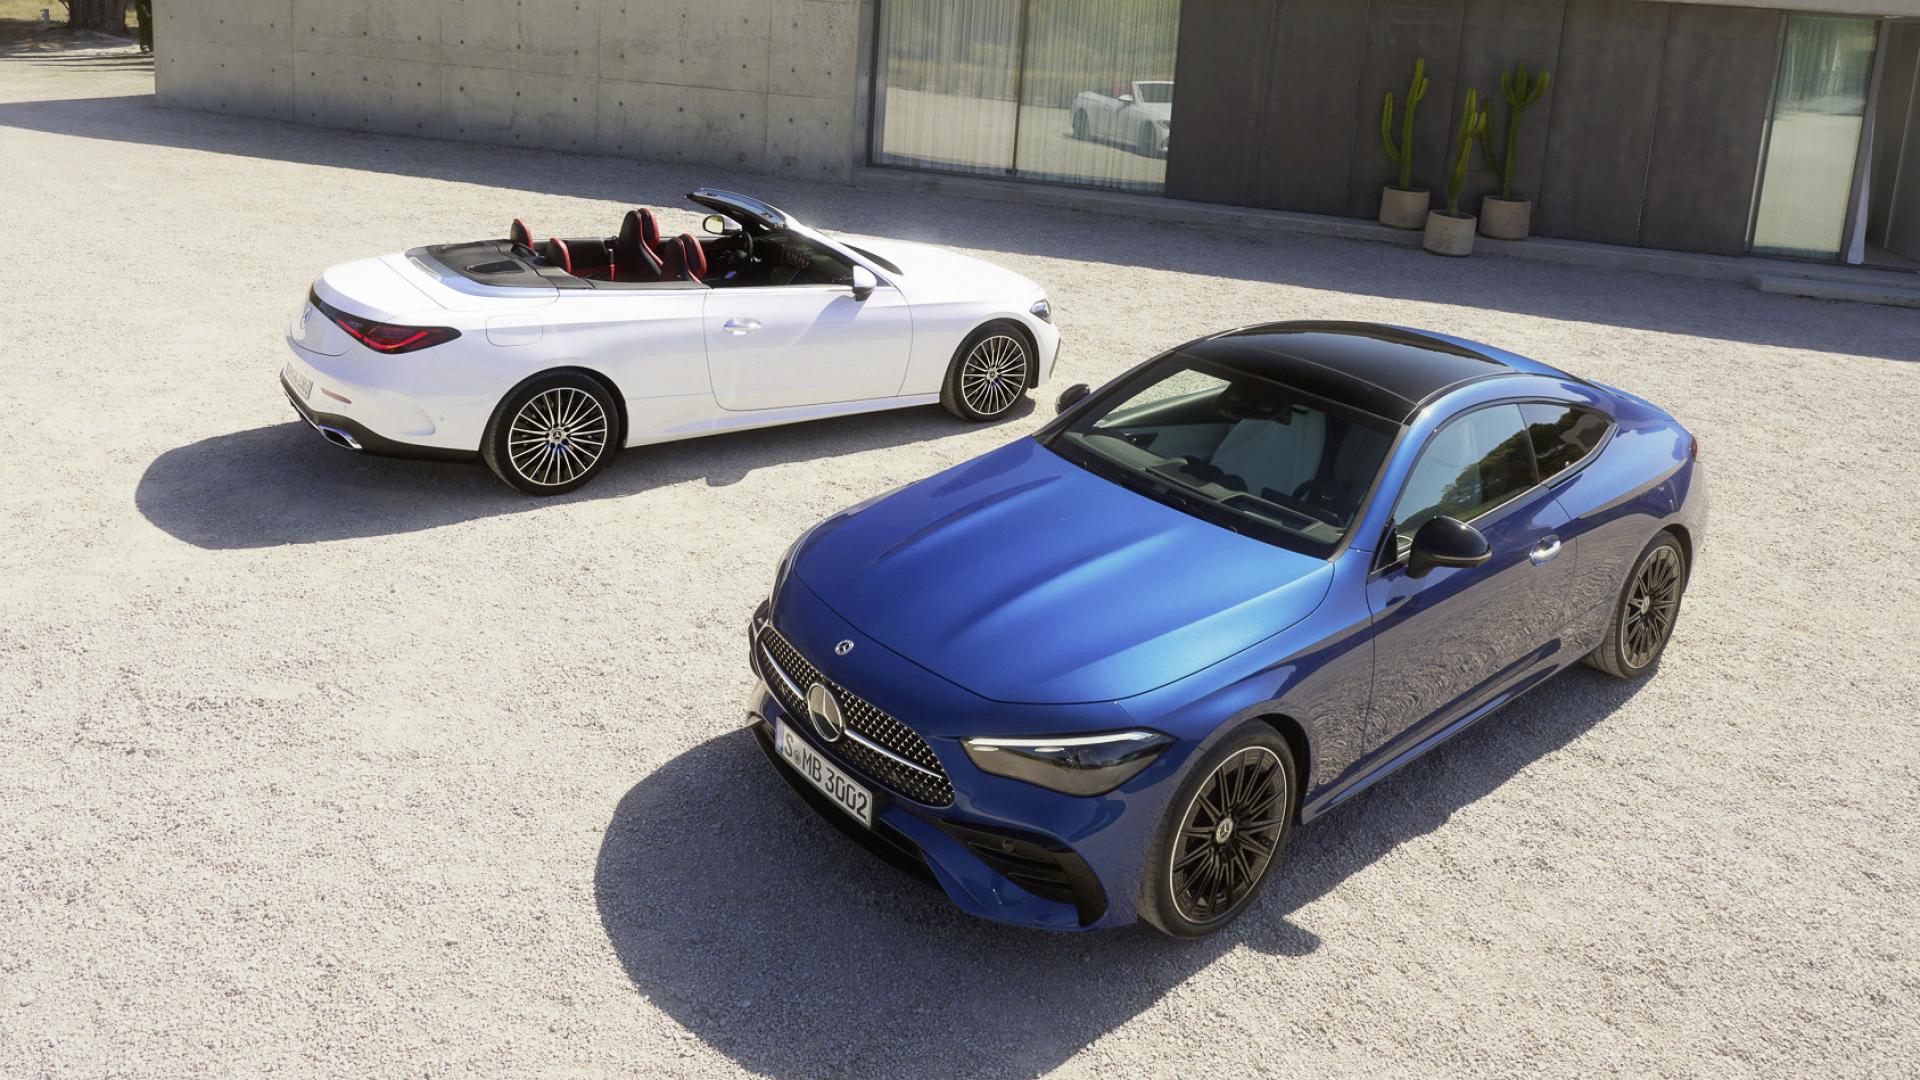 Mercedes lance un nouveau duo de coupé et cabriolet baptisé CLE